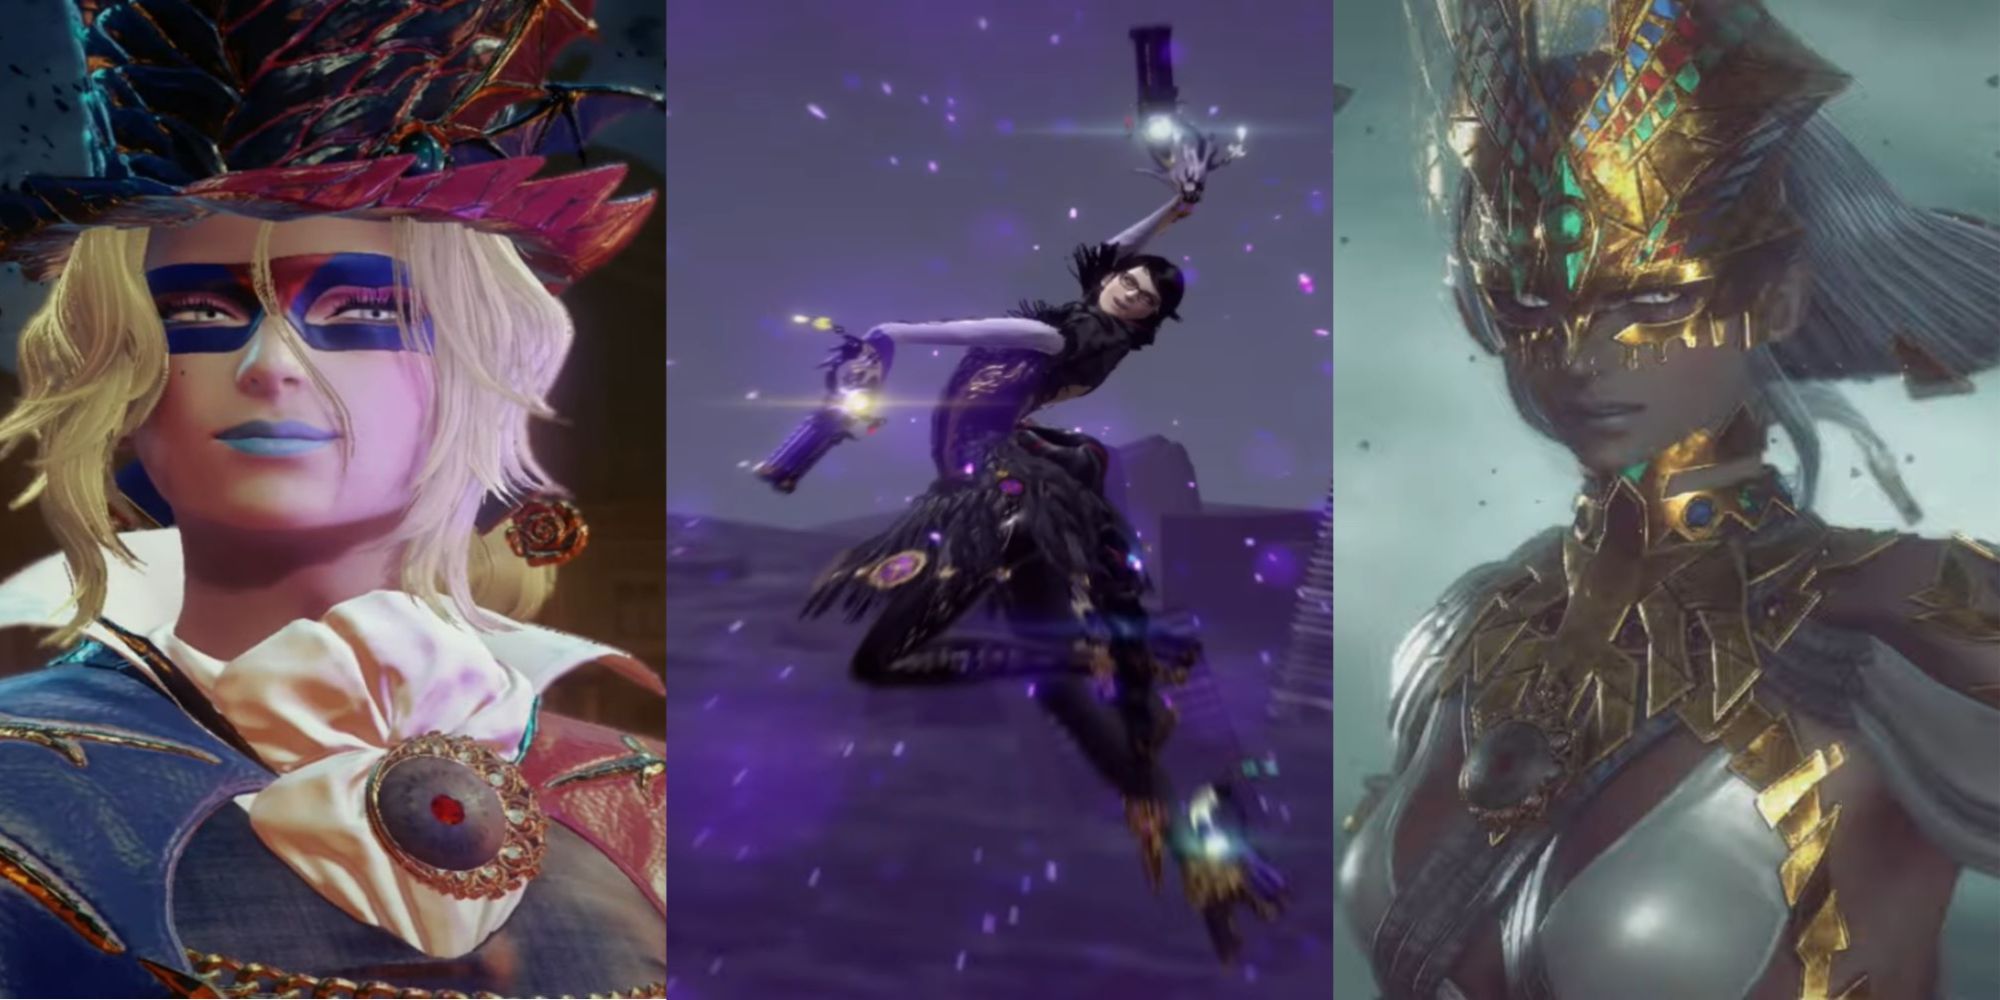 β4 Bayonetta with a smirk on her face, Bayonetta posing while surrounded by a purple effect, and β3 Bayonetta grimacing, left to right